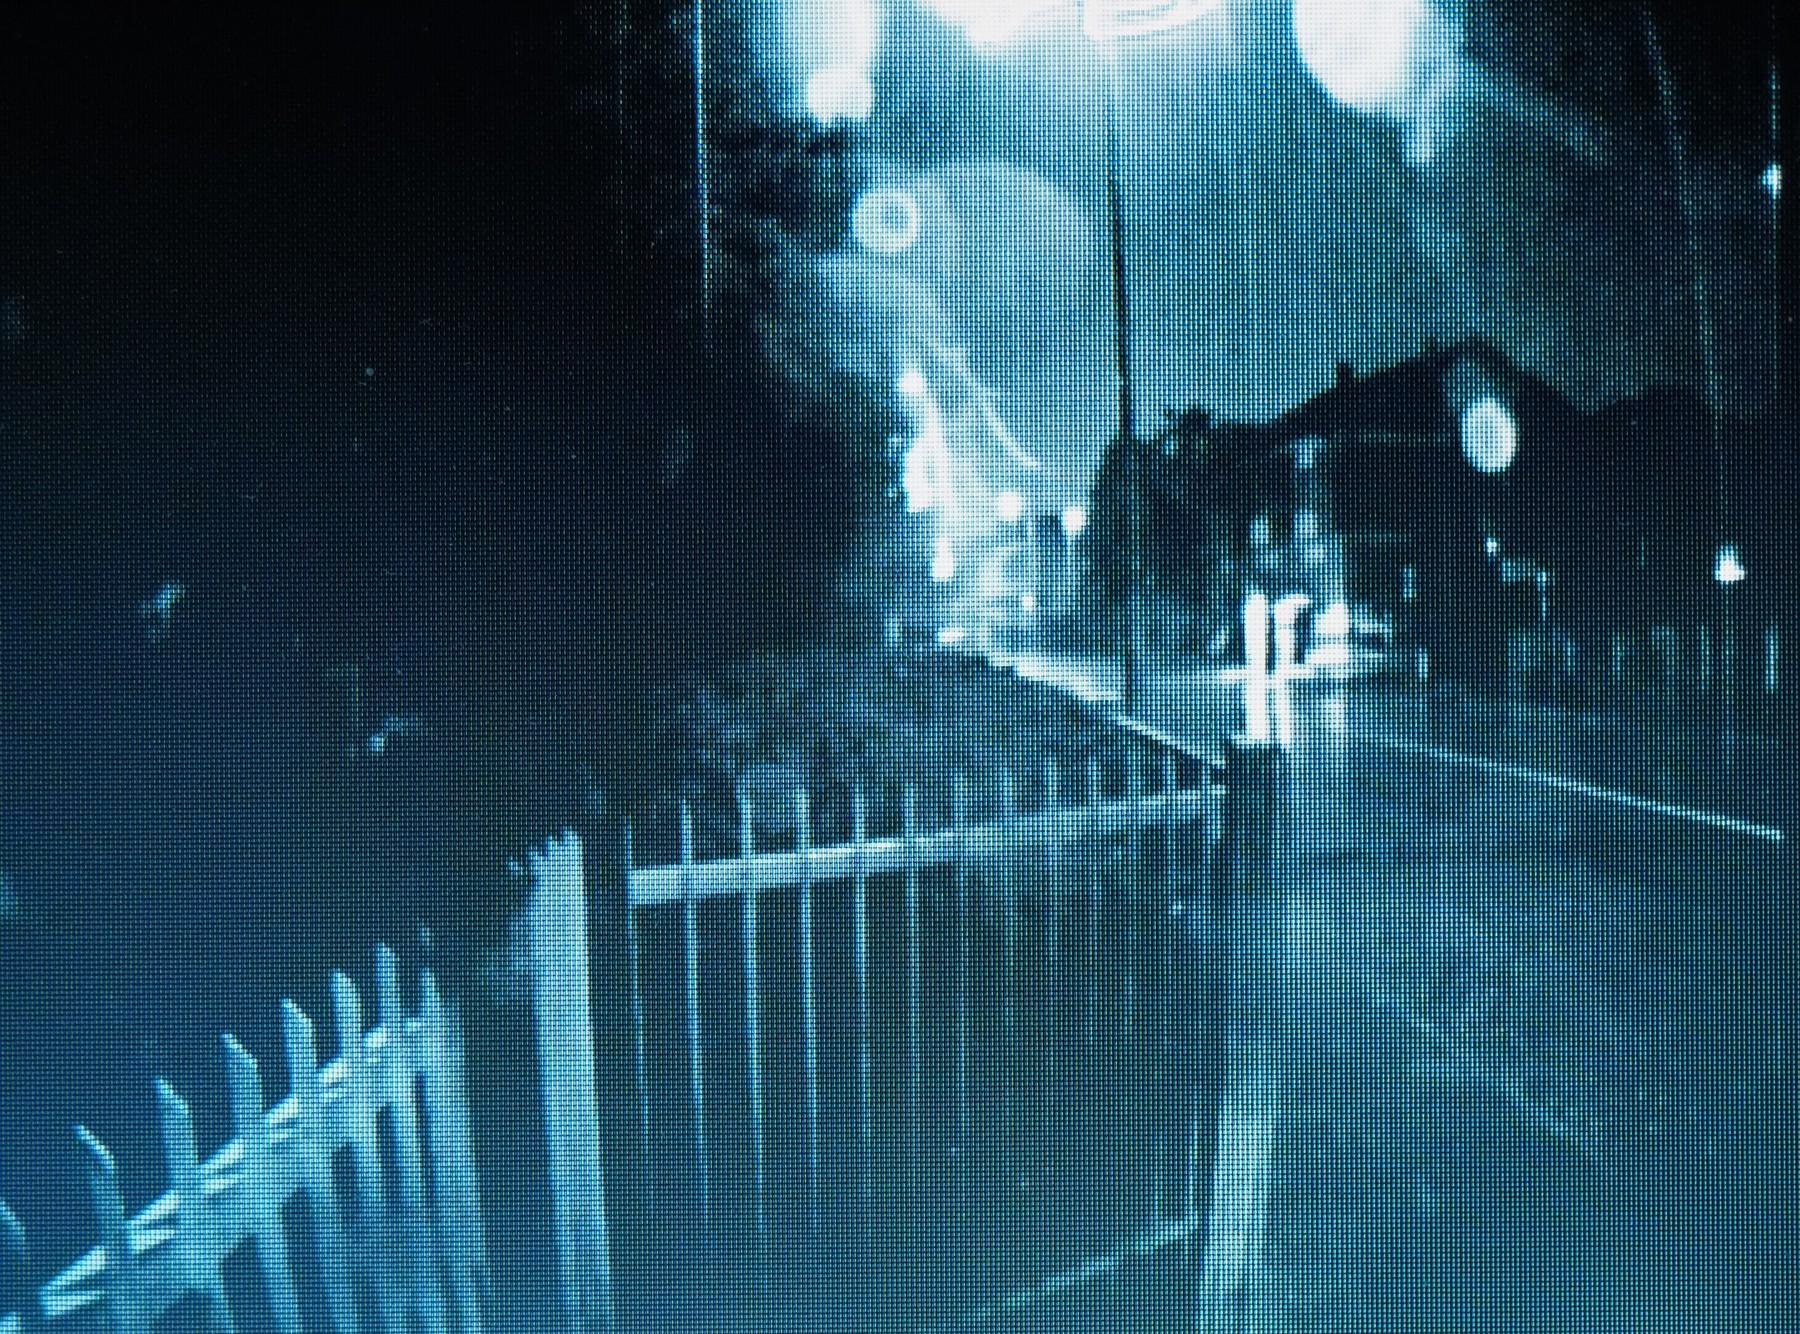 imagine surprinsa noaptea de o camera de supraveghere